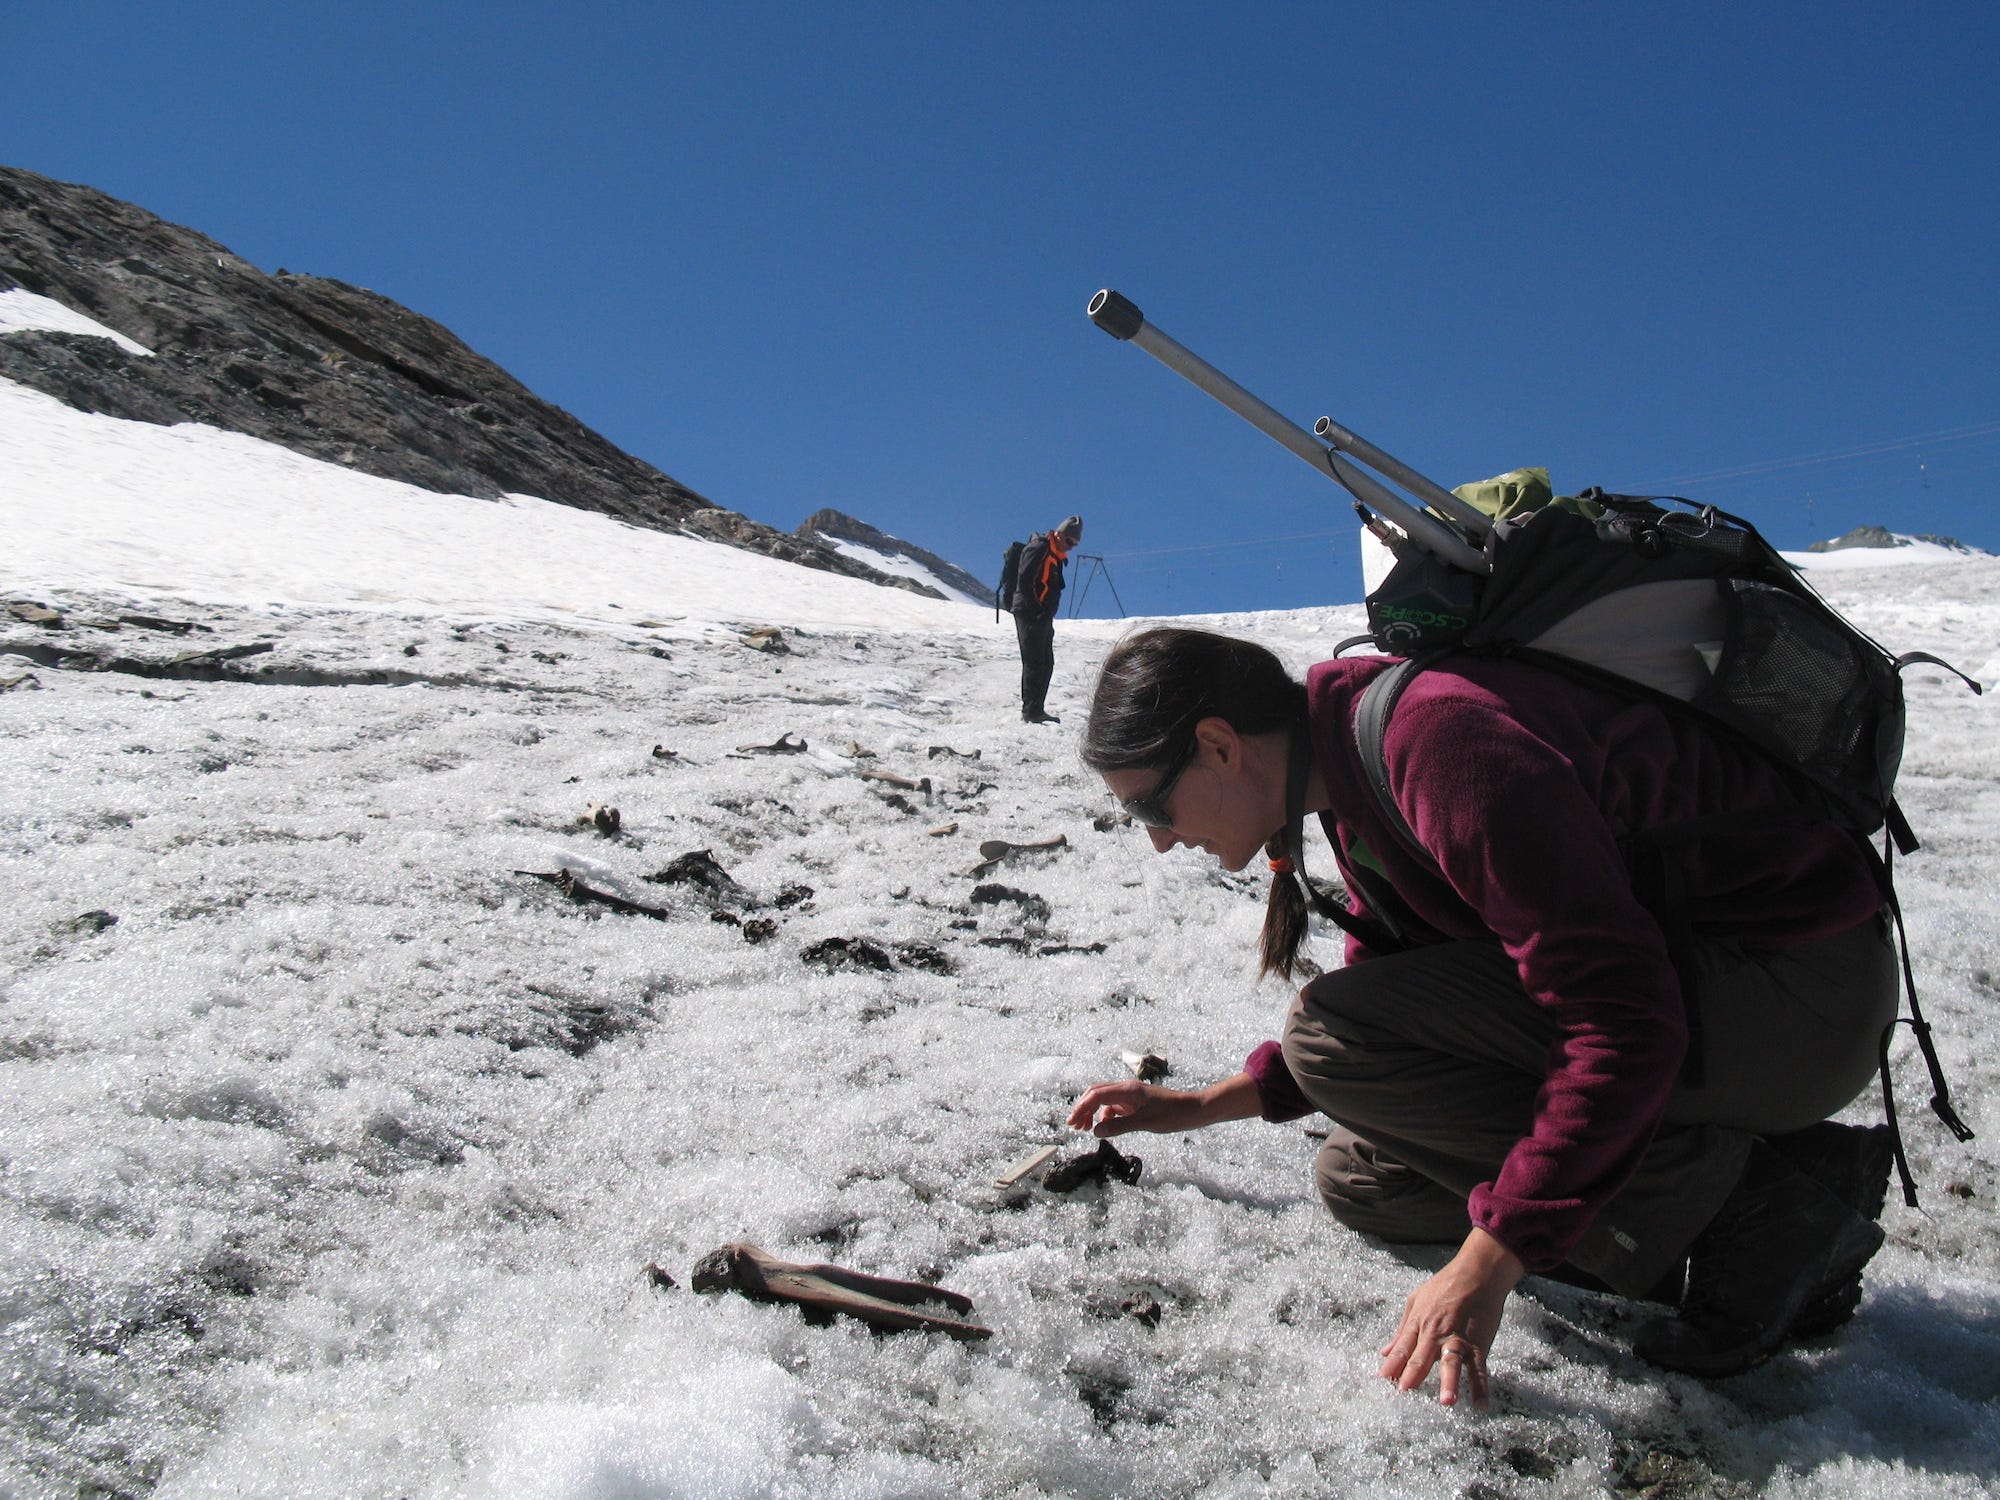 Eine Frau mit einem großen Rucksack und Stangen, die oben herausragen, hockt auf knusprigem, strukturiertem Eis und blickt auf einen Knochen, der auf dem Boden liegt, mit Berggipfeln im Hintergrund